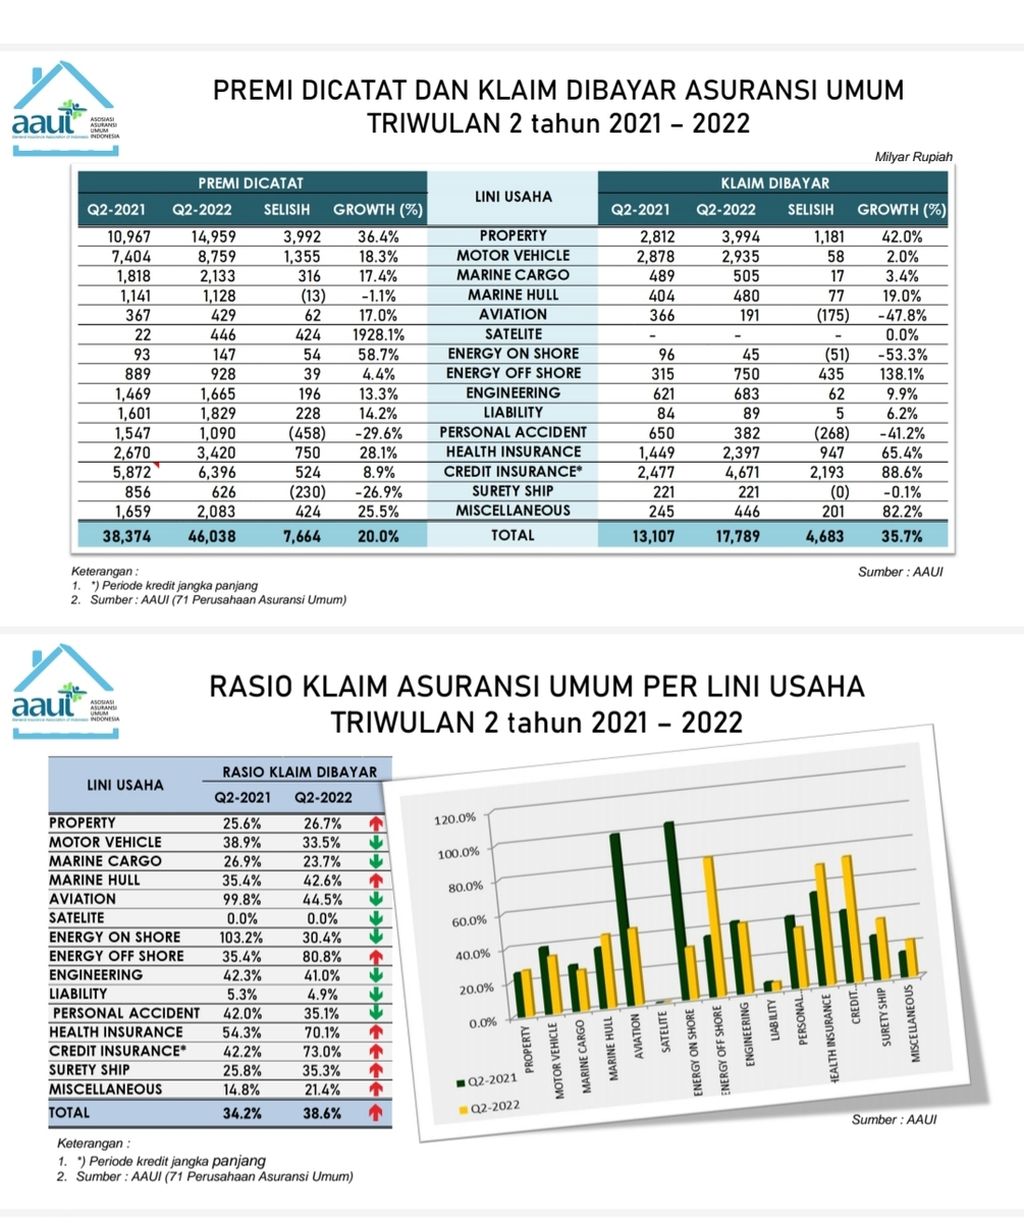 Pendapatan premi dan rasio klaim industri asuransi umum triwulan 2-2022. Sumber: Asosiasi Asuransi Umum Indonesia (AAUI)